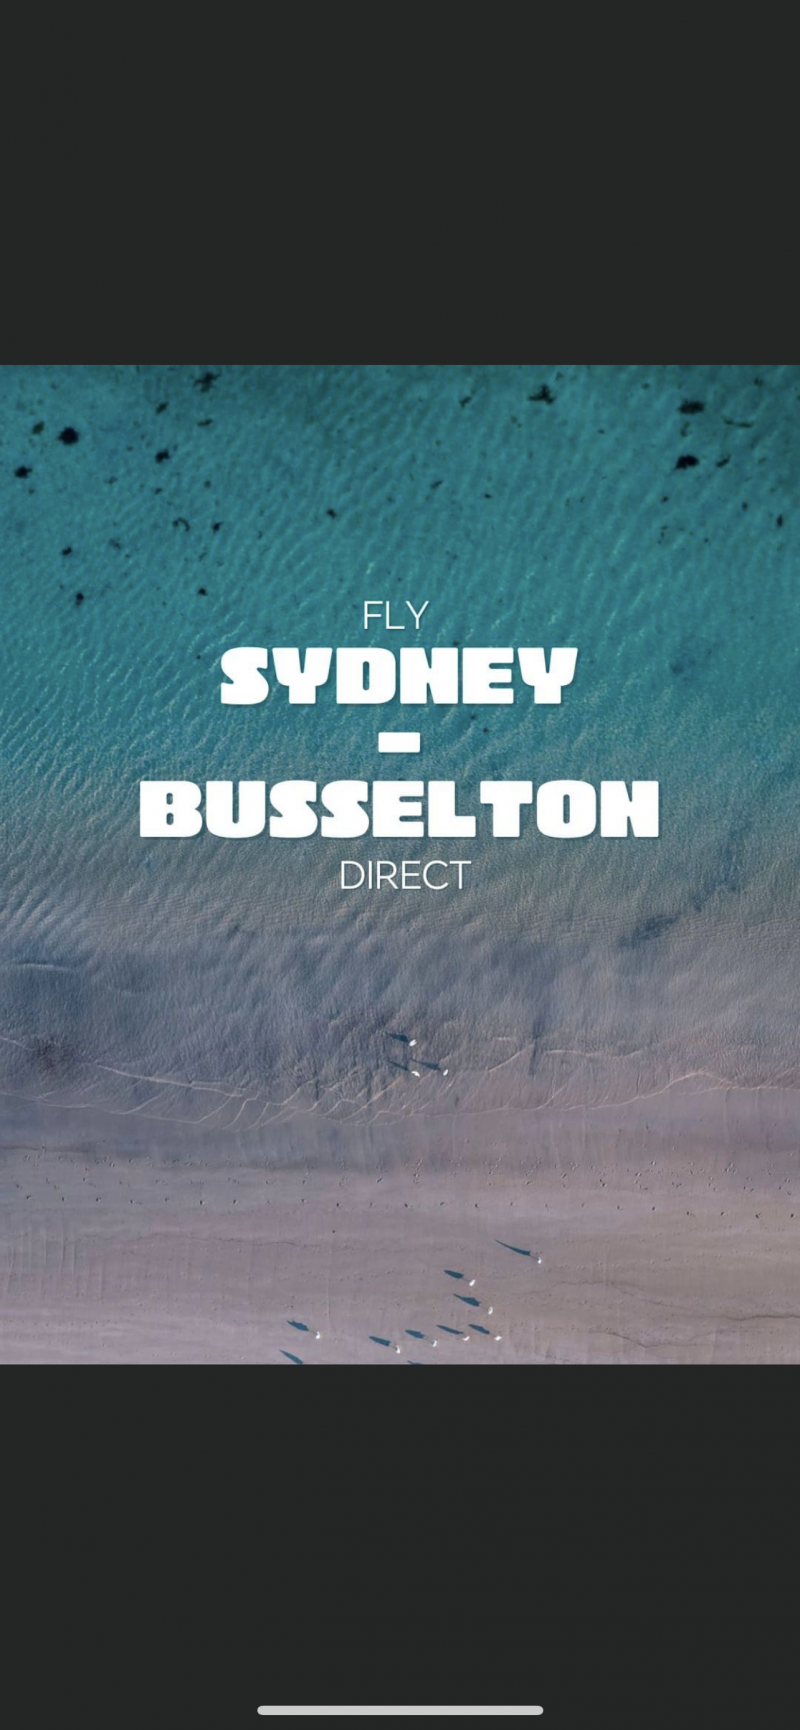 Sydney Jetstar flights to Busselton Regional airport